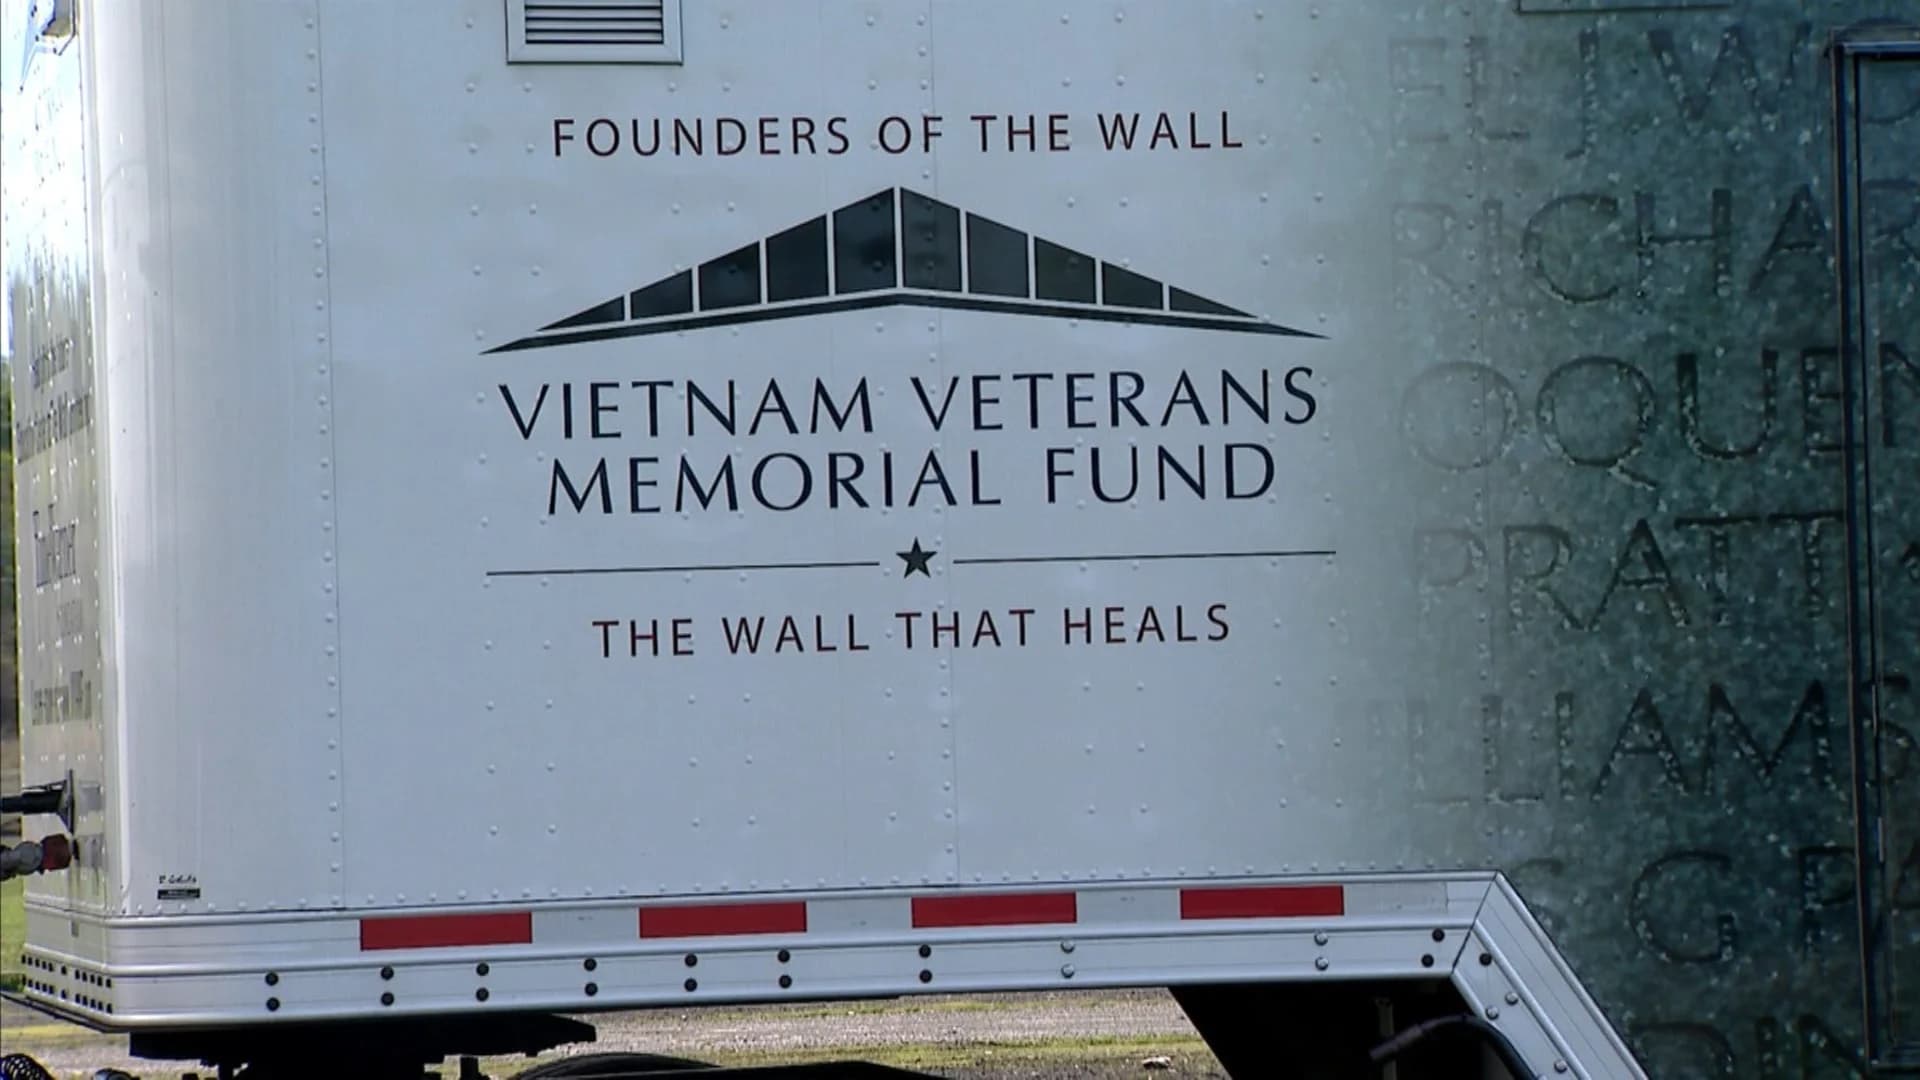 "The Wall that Heals" mobile memorial, now in Bridgeport, honors Vietnam War veterans